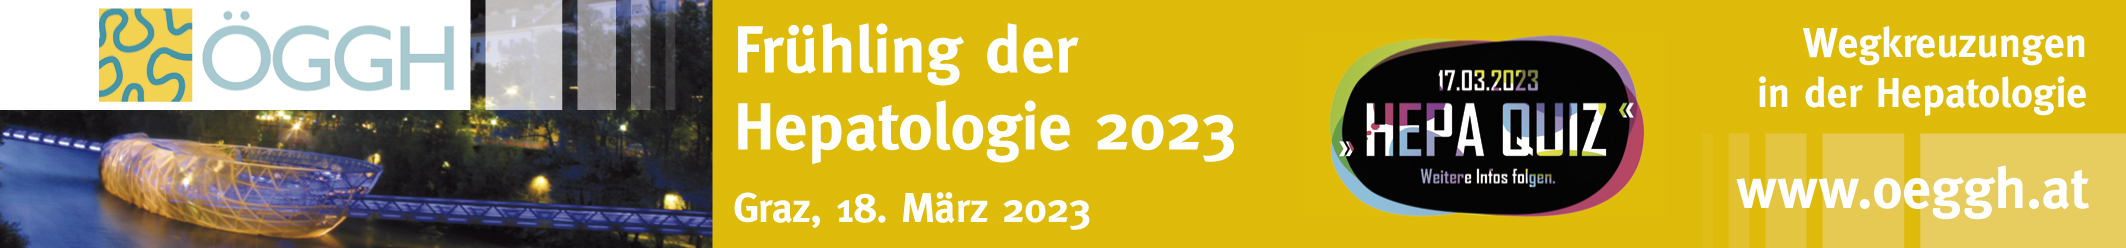 Frühling der Hepatologie 2023